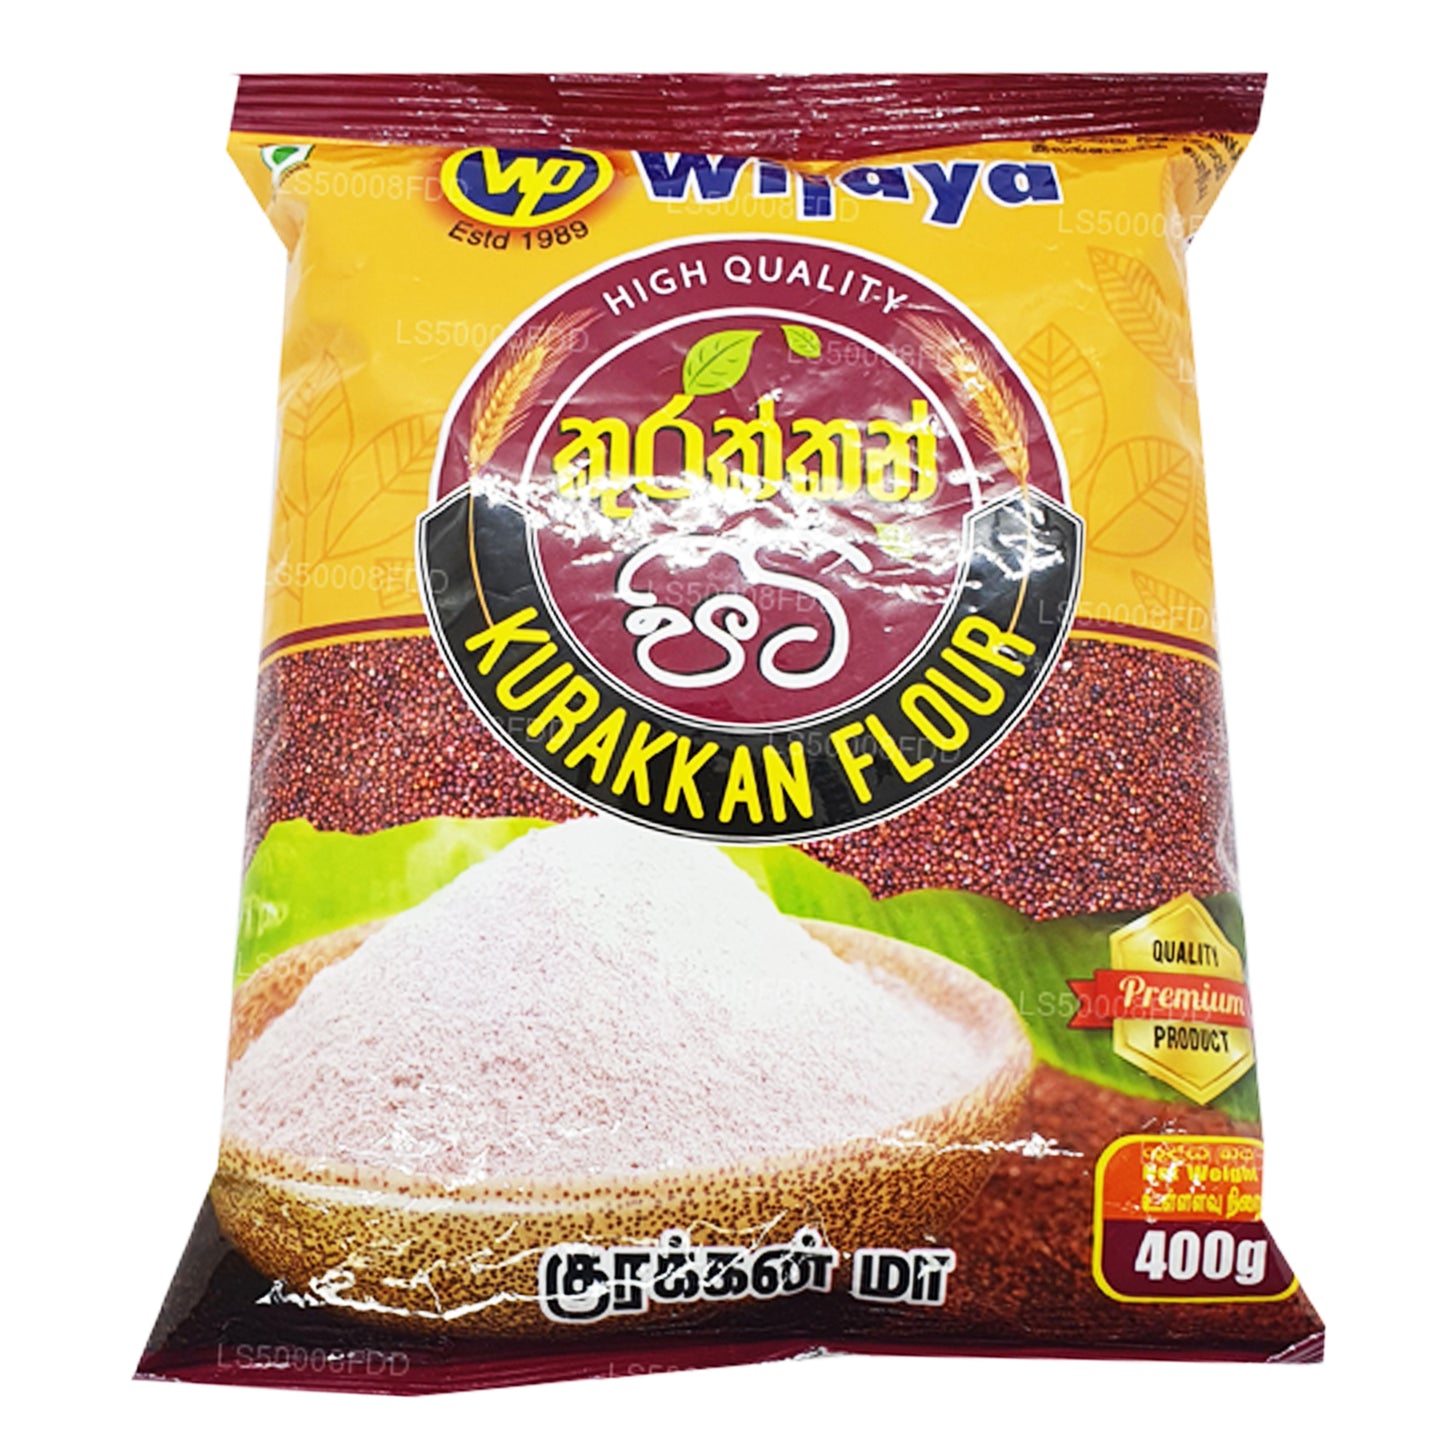 Wijaya Kurakkan Flour (400g)